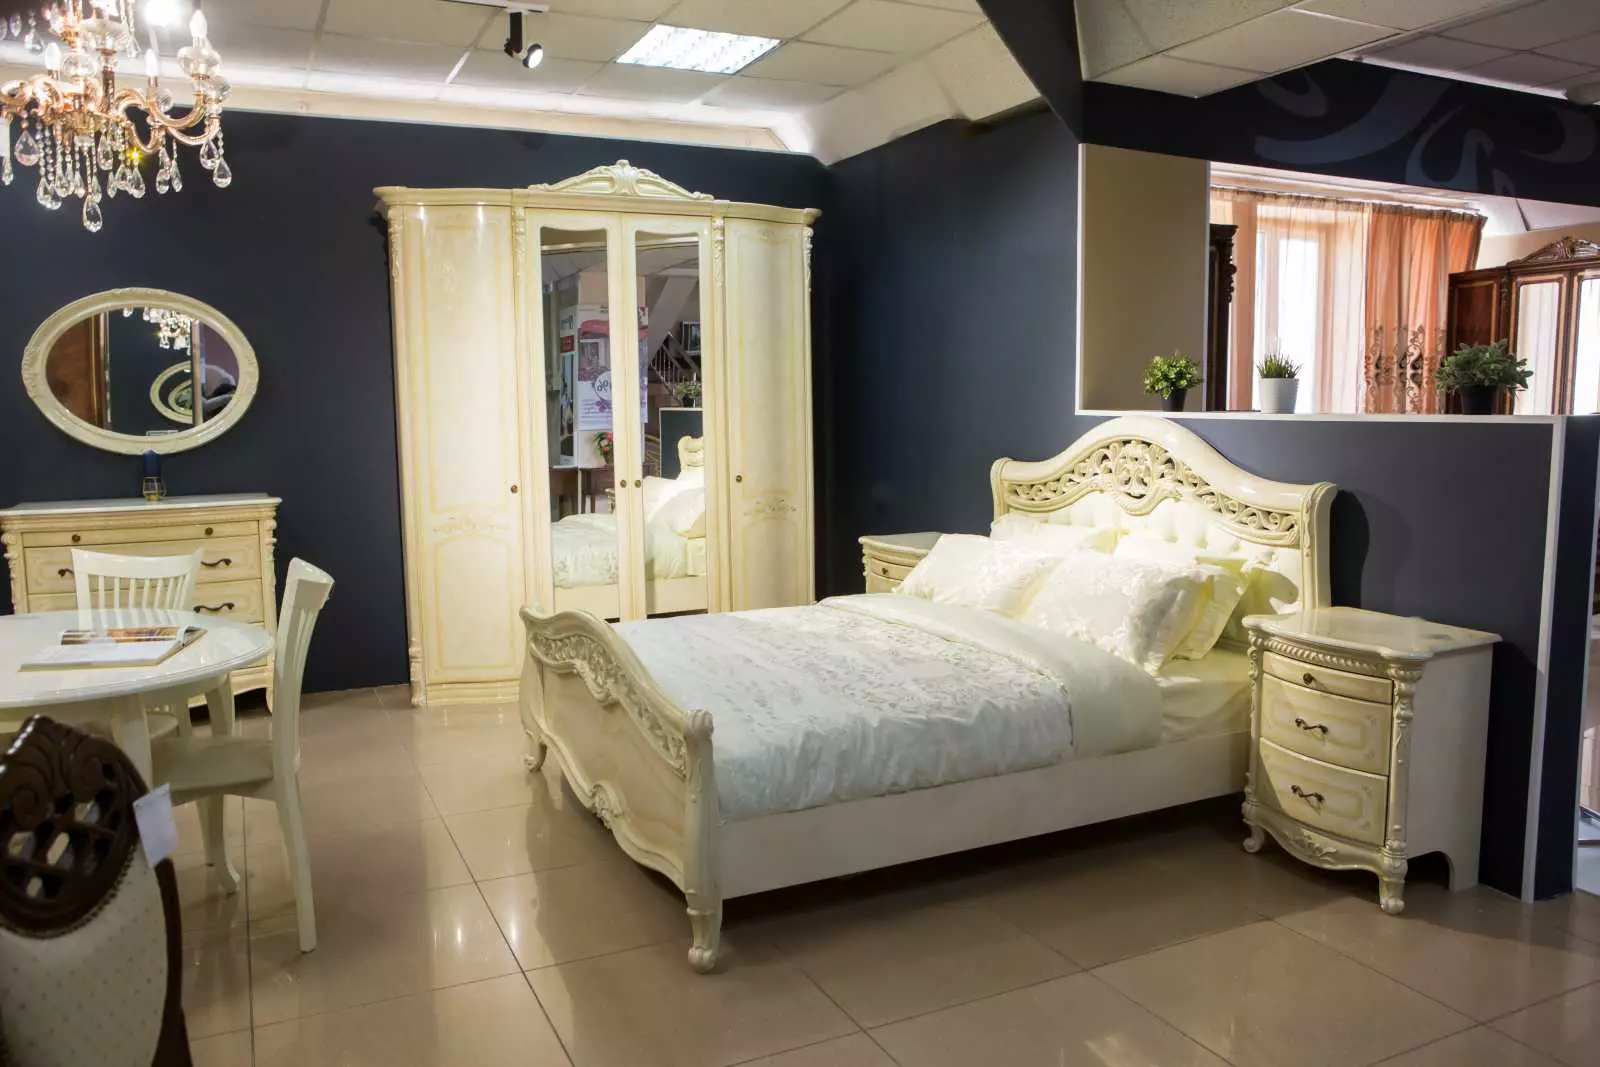 Möbel von Premium-Klasse für Schlafzimmer (46 Fotos): Überprüfung der teuren Elite russischer Produktion Möbel, exklusiver königlicher Schlafzimmer-Sets, wunderschöner Möbel in modernem und klassischen Stil 9930_42